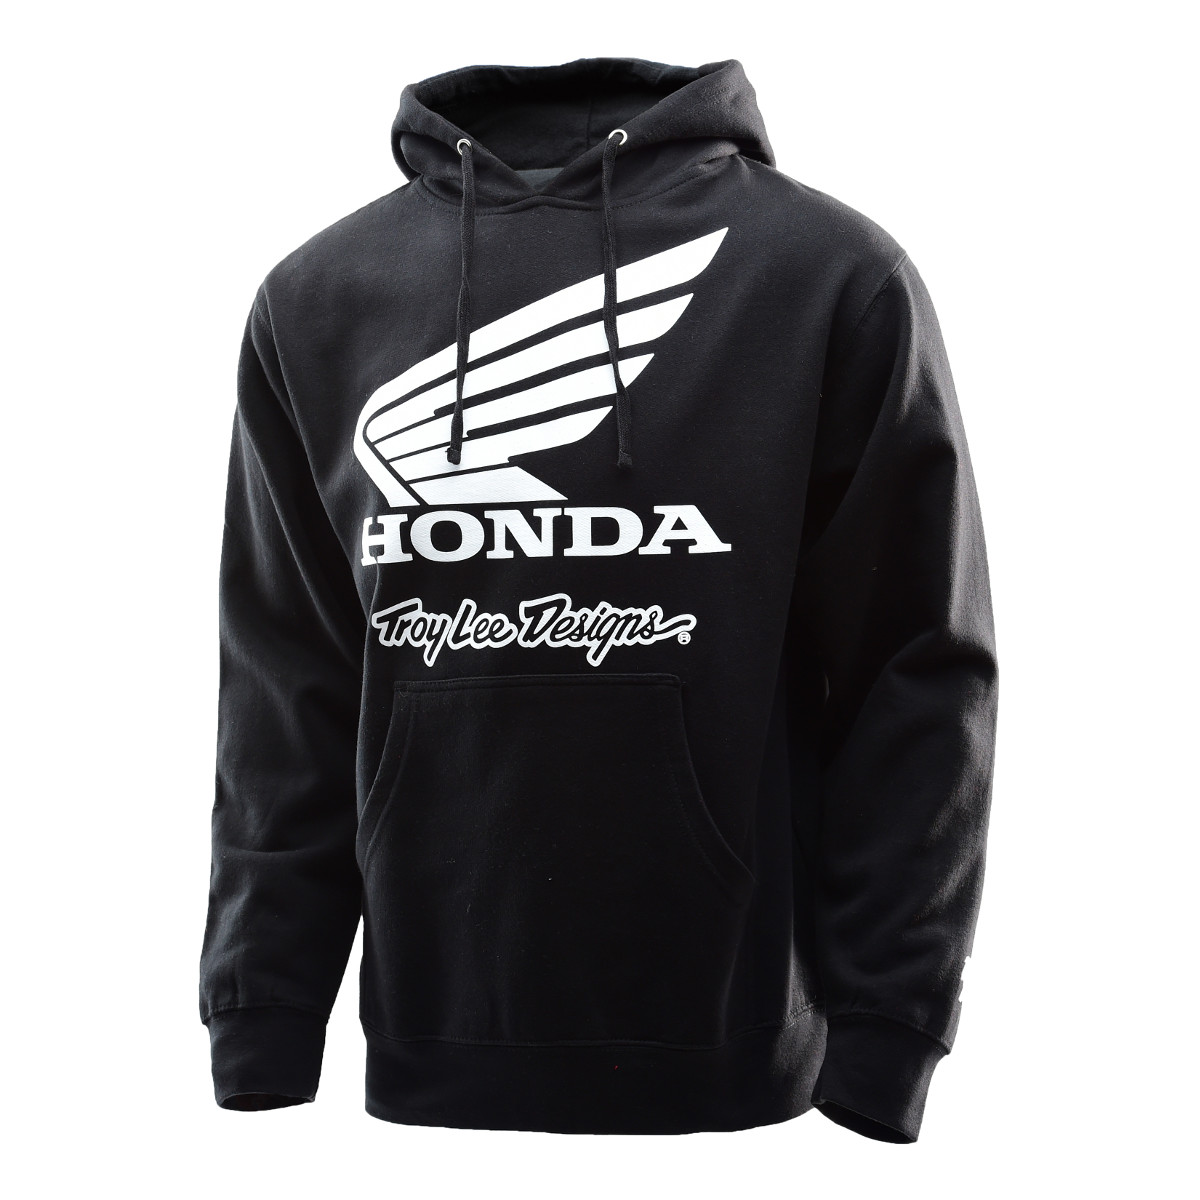 Troy Lee Designs Hoody Honda Wing Black